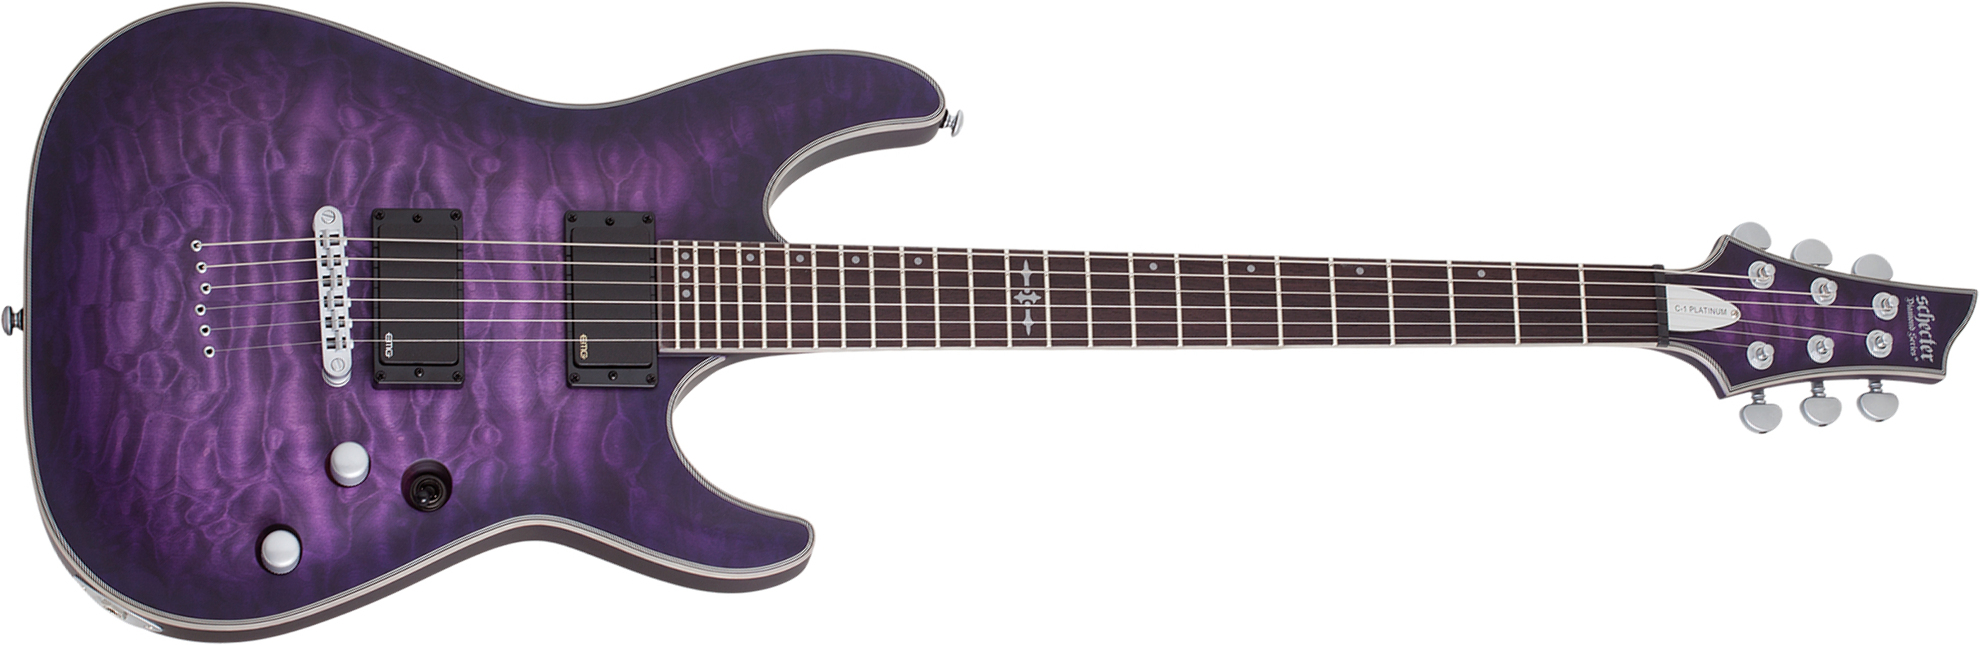 Schecter C-1 Platinum 2h Emg Ht Eb - Satin Purple Burst - Str shape electric guitar - Main picture